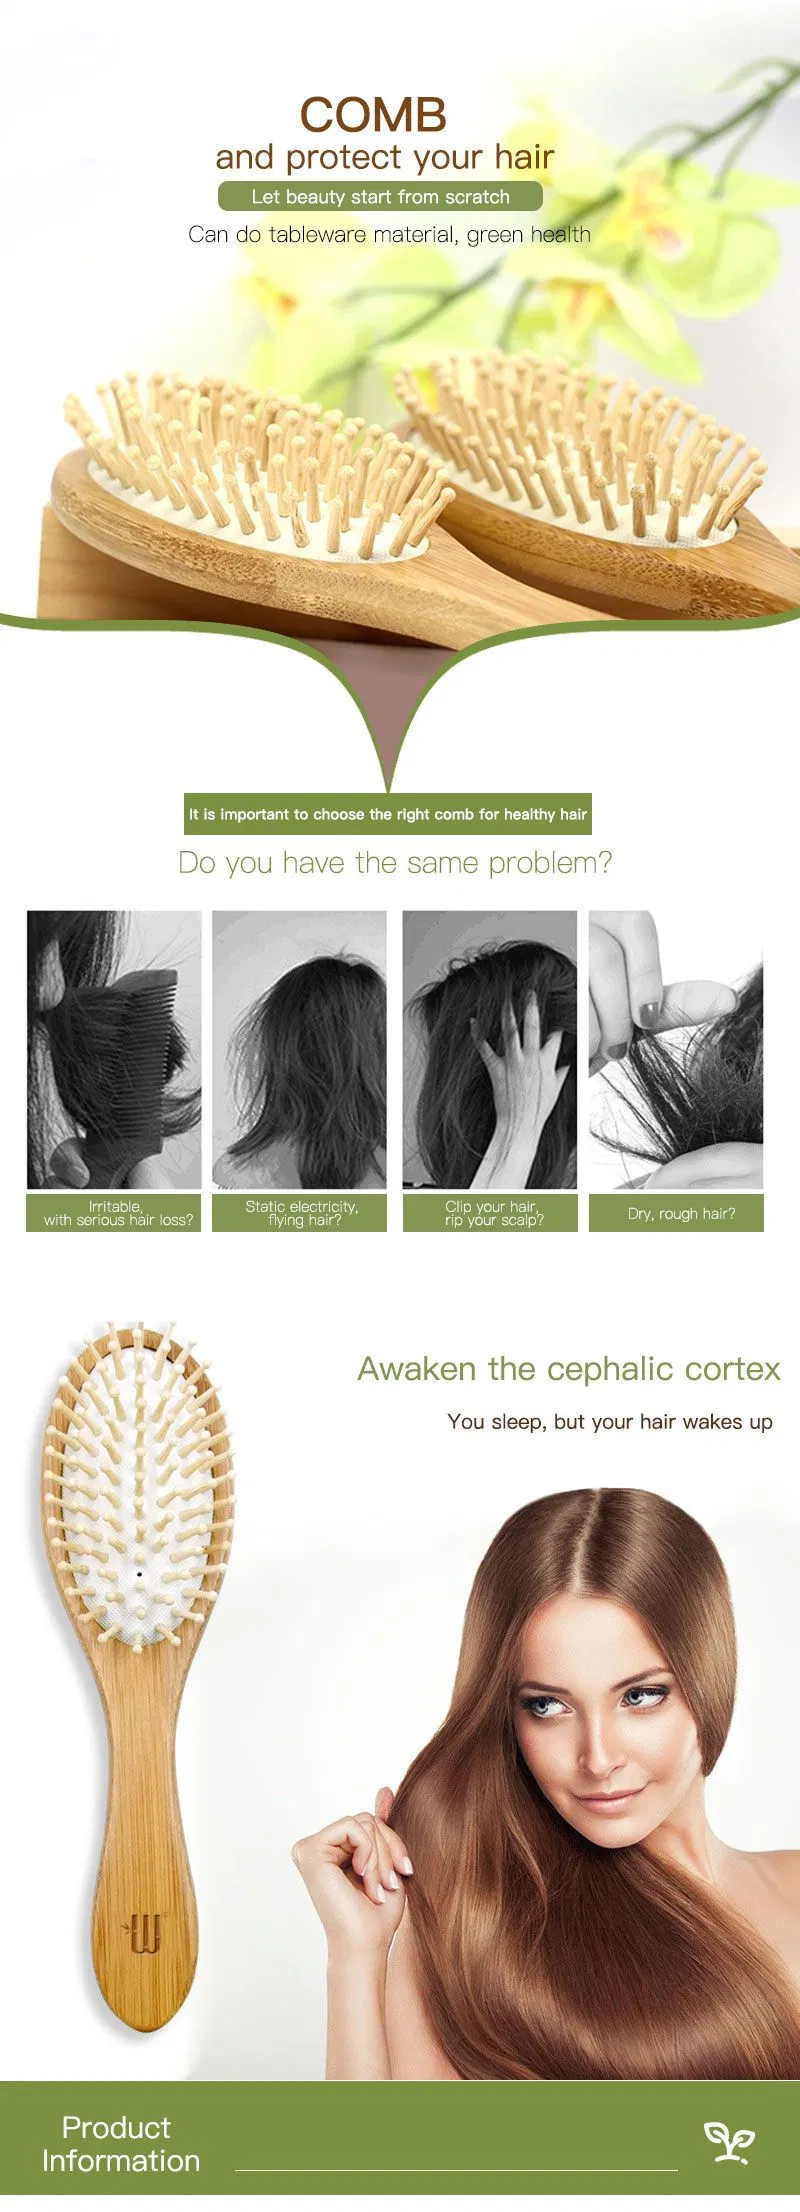 Willest Custom Logo Airbag Comb Wooden Hair Brush, Black and White Hair Massage Bamboo Paddle Hair Brush for Women